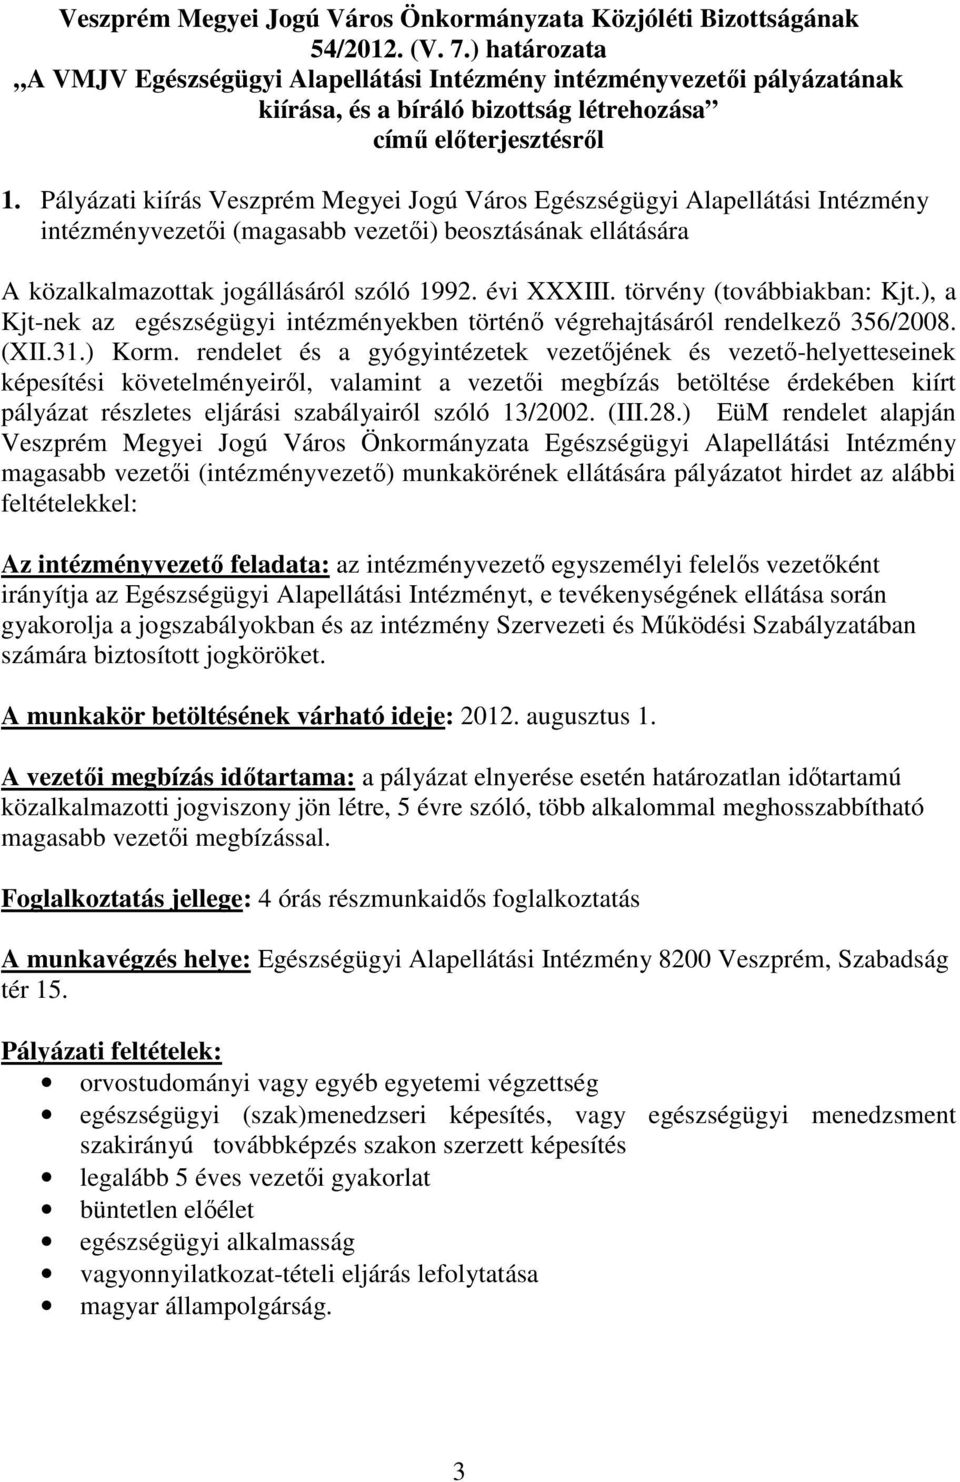 Pályázati kiírás Veszprém Megyei Jogú Város Egészségügyi Alapellátási Intézmény intézményvezetıi (magasabb vezetıi) beosztásának ellátására A közalkalmazottak jogállásáról szóló 1992. évi XXXIII.